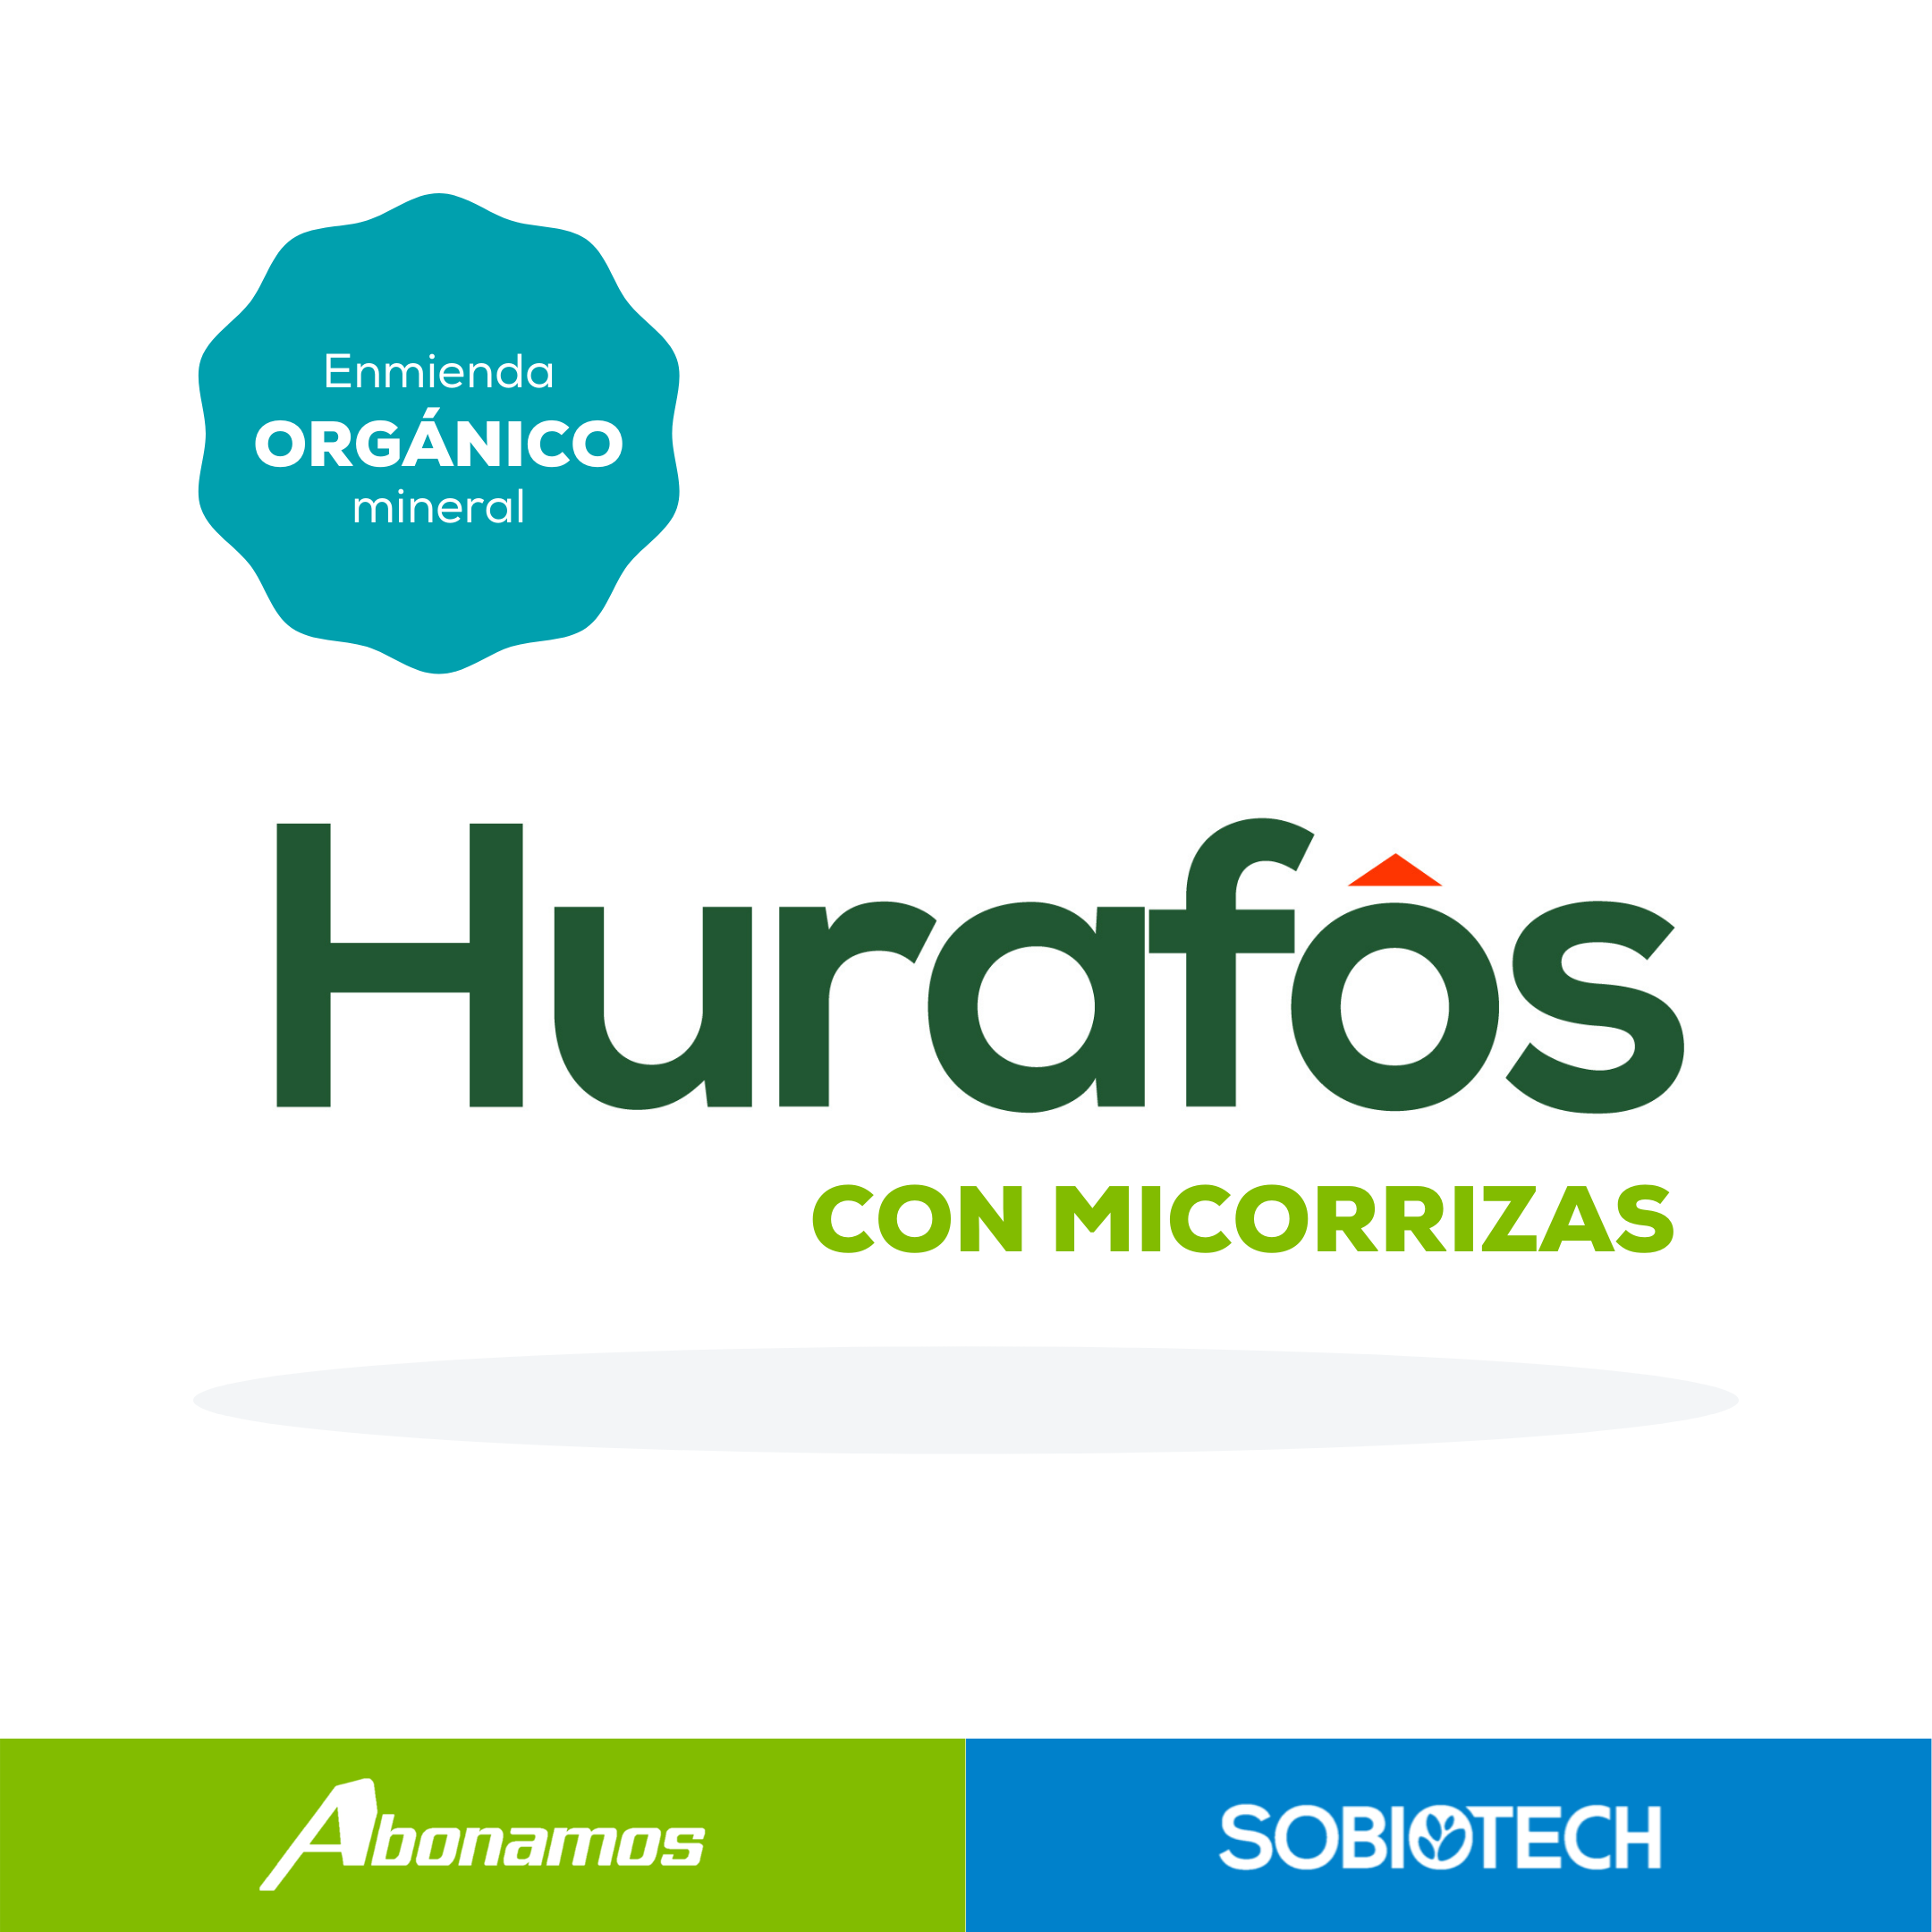 5 Enmienda mineral orgánica con microorganismos Abonamos Hurafos con  Micorrizas.png